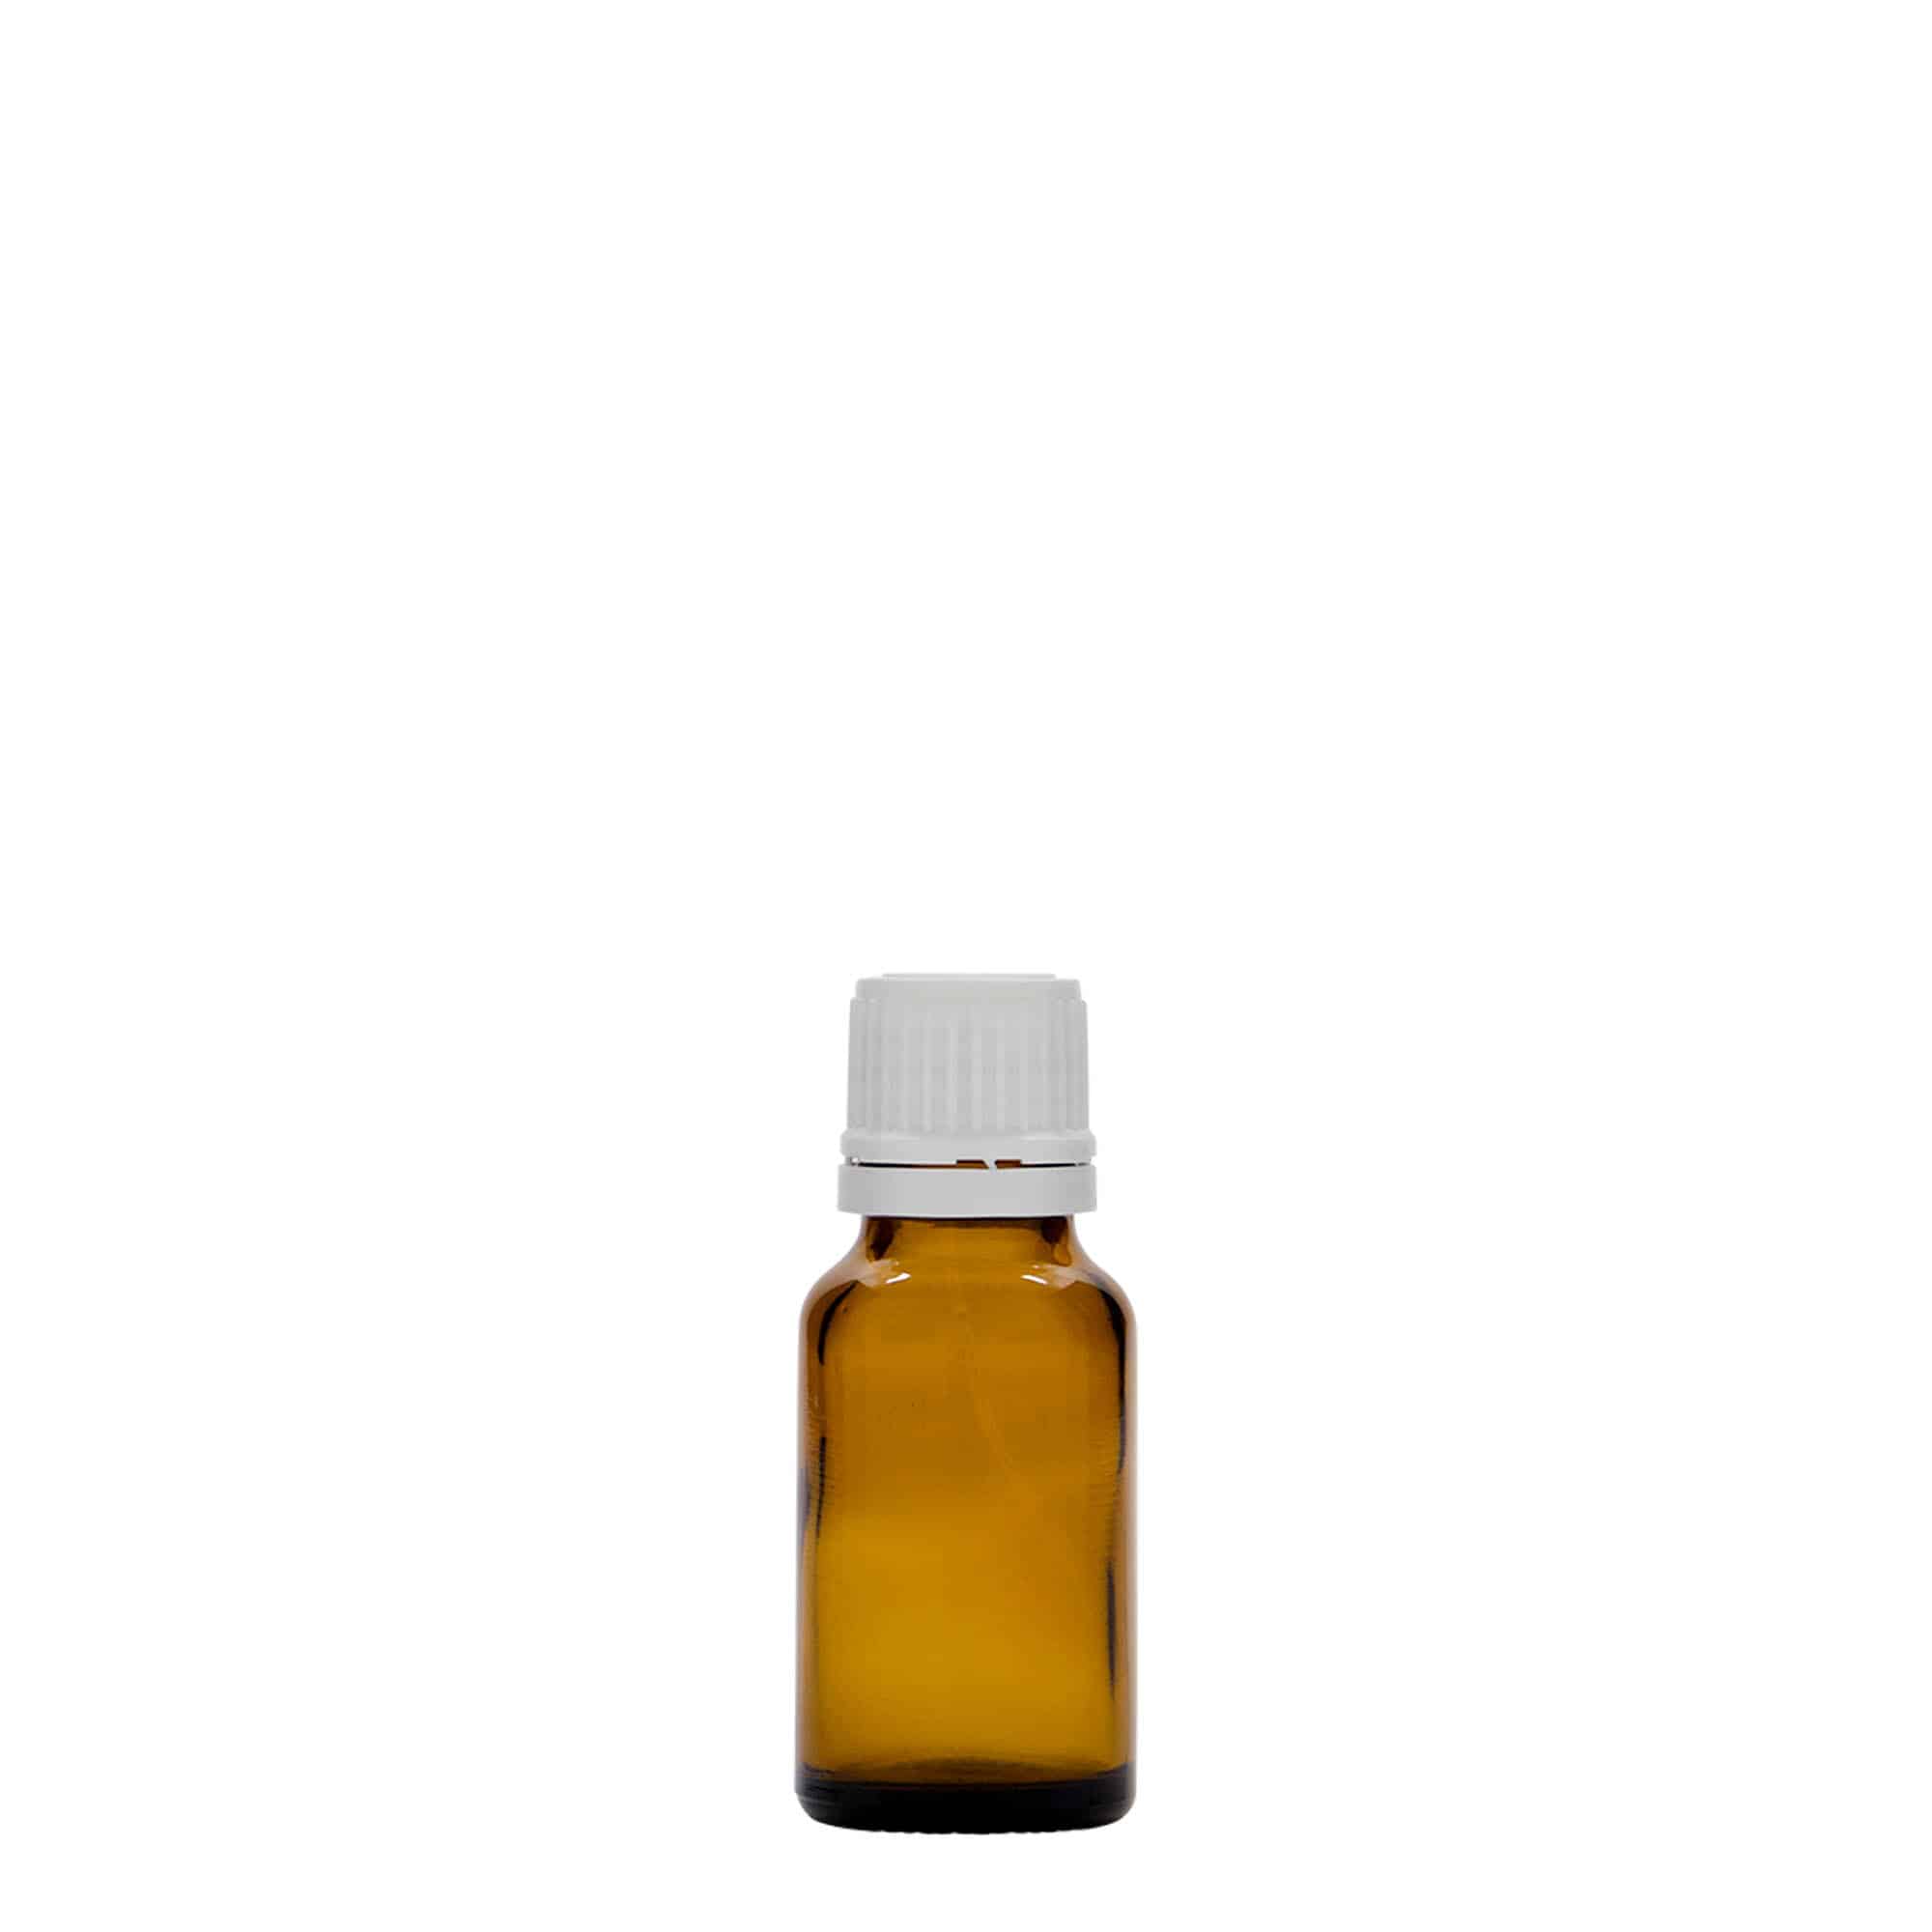 15 ml Medizinflasche, Glas, braun, Mündung: DIN 18